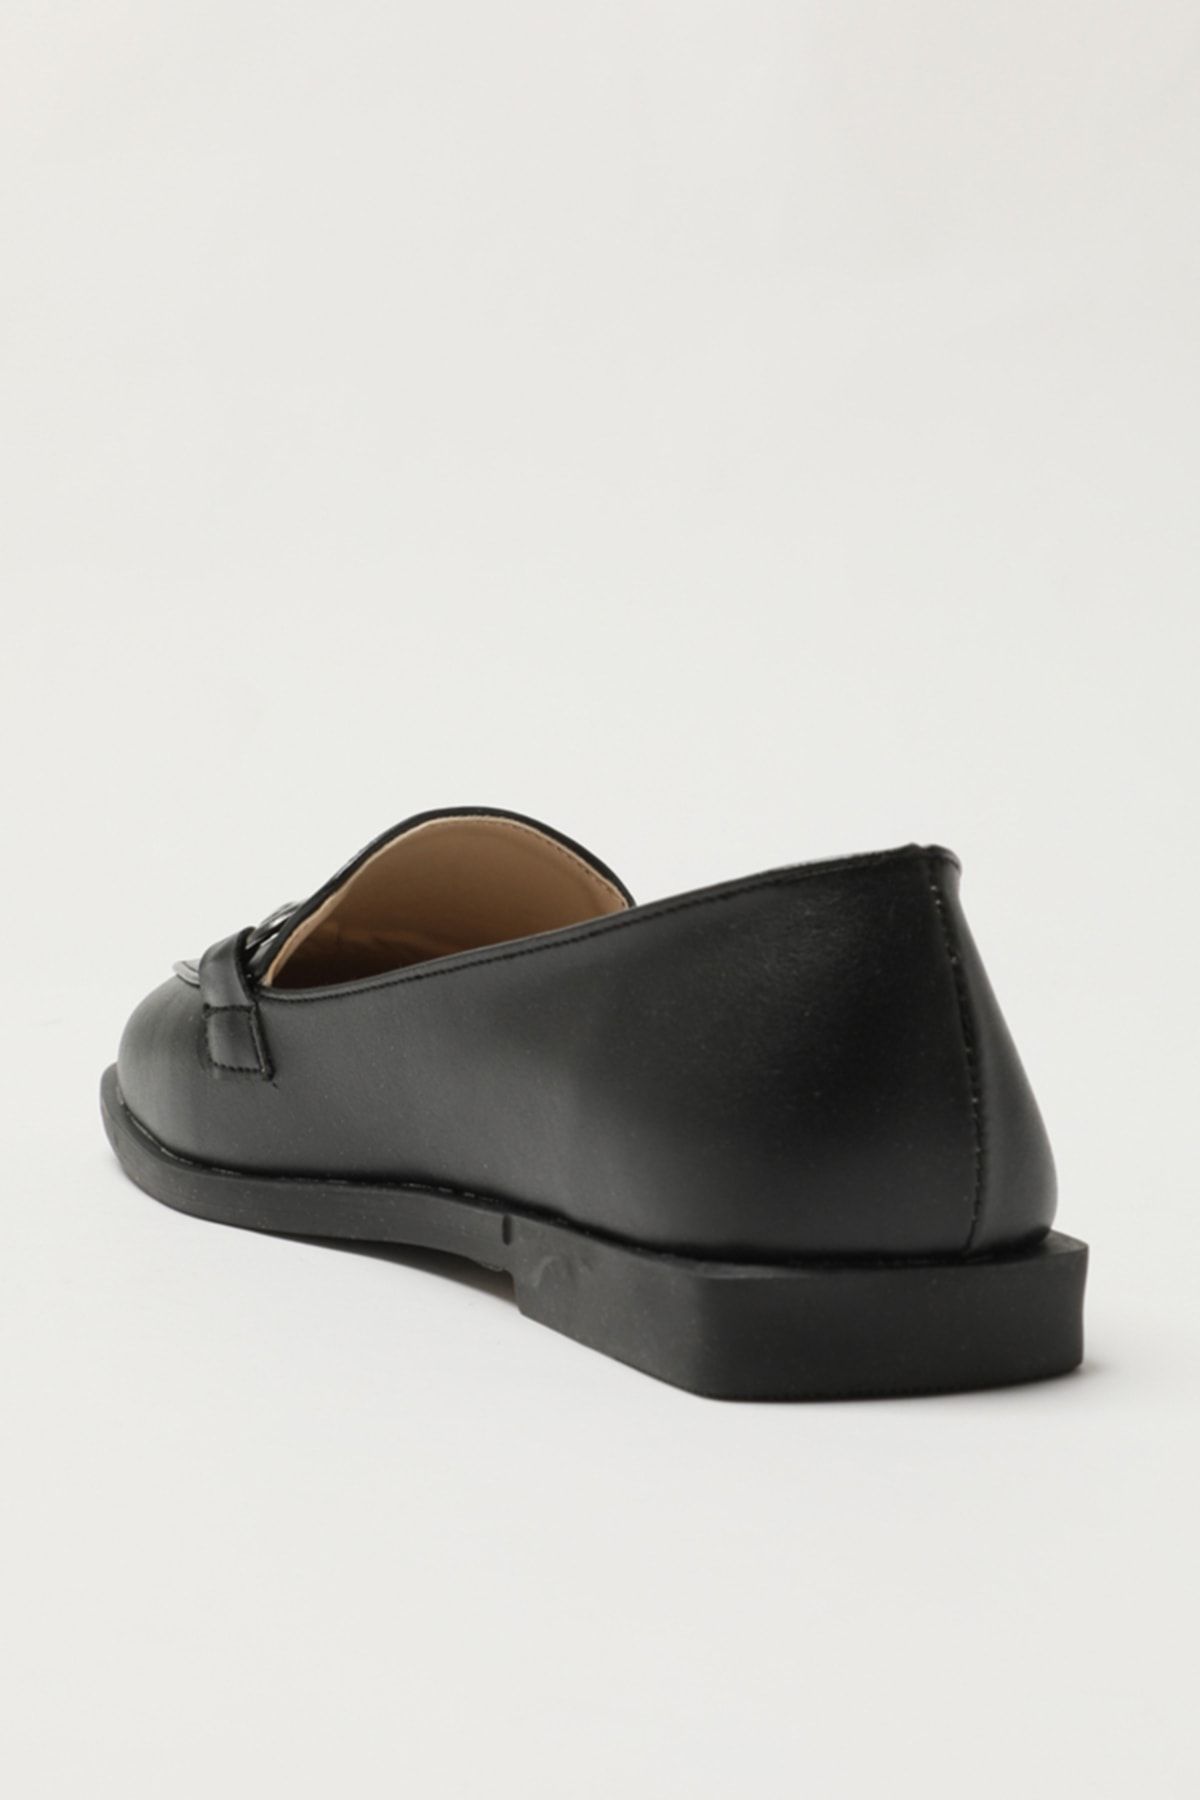 fjols jævnt gået vanvittigt Trendyol Shoes Loafer Shoes - Black - Flat - Trendyol